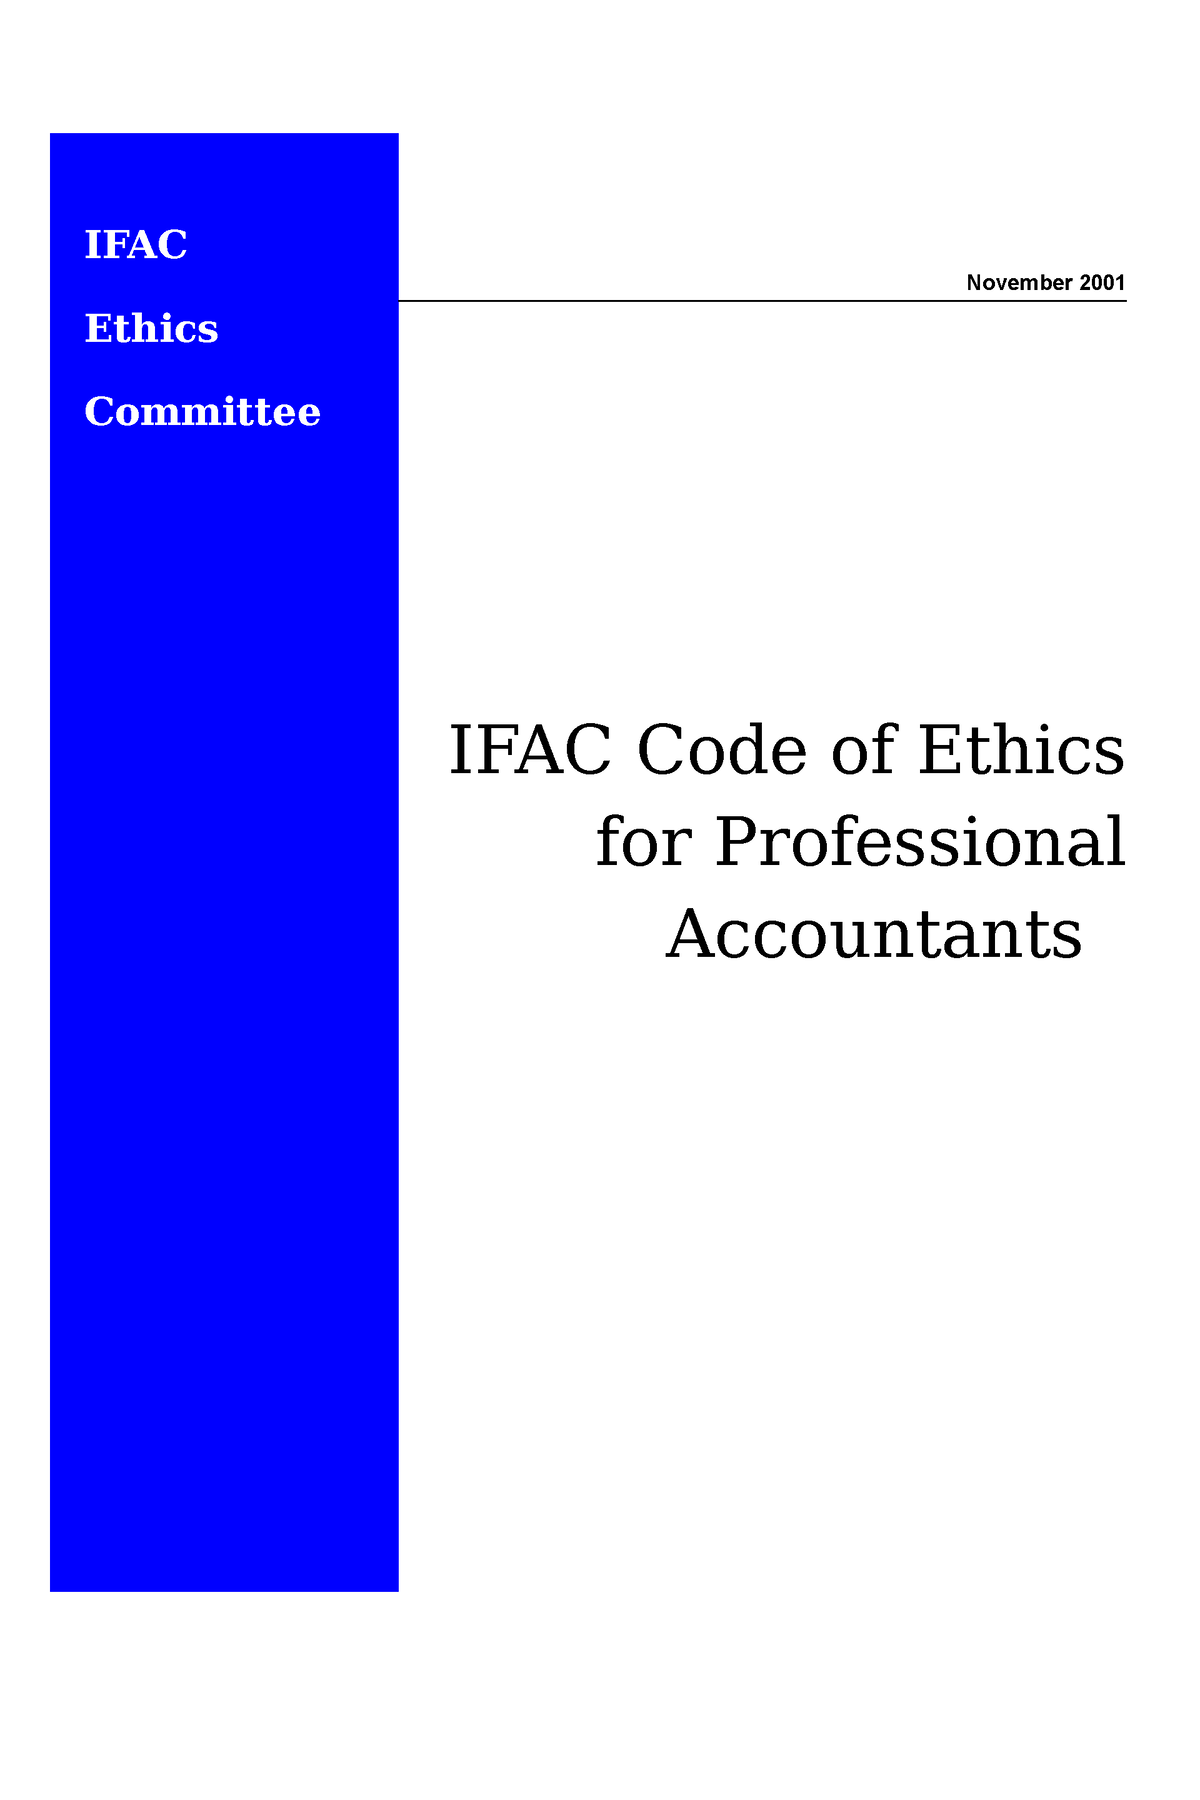 eth-code-of-ethics-en-ifac-ethics-committee-november-2001-ifac-code